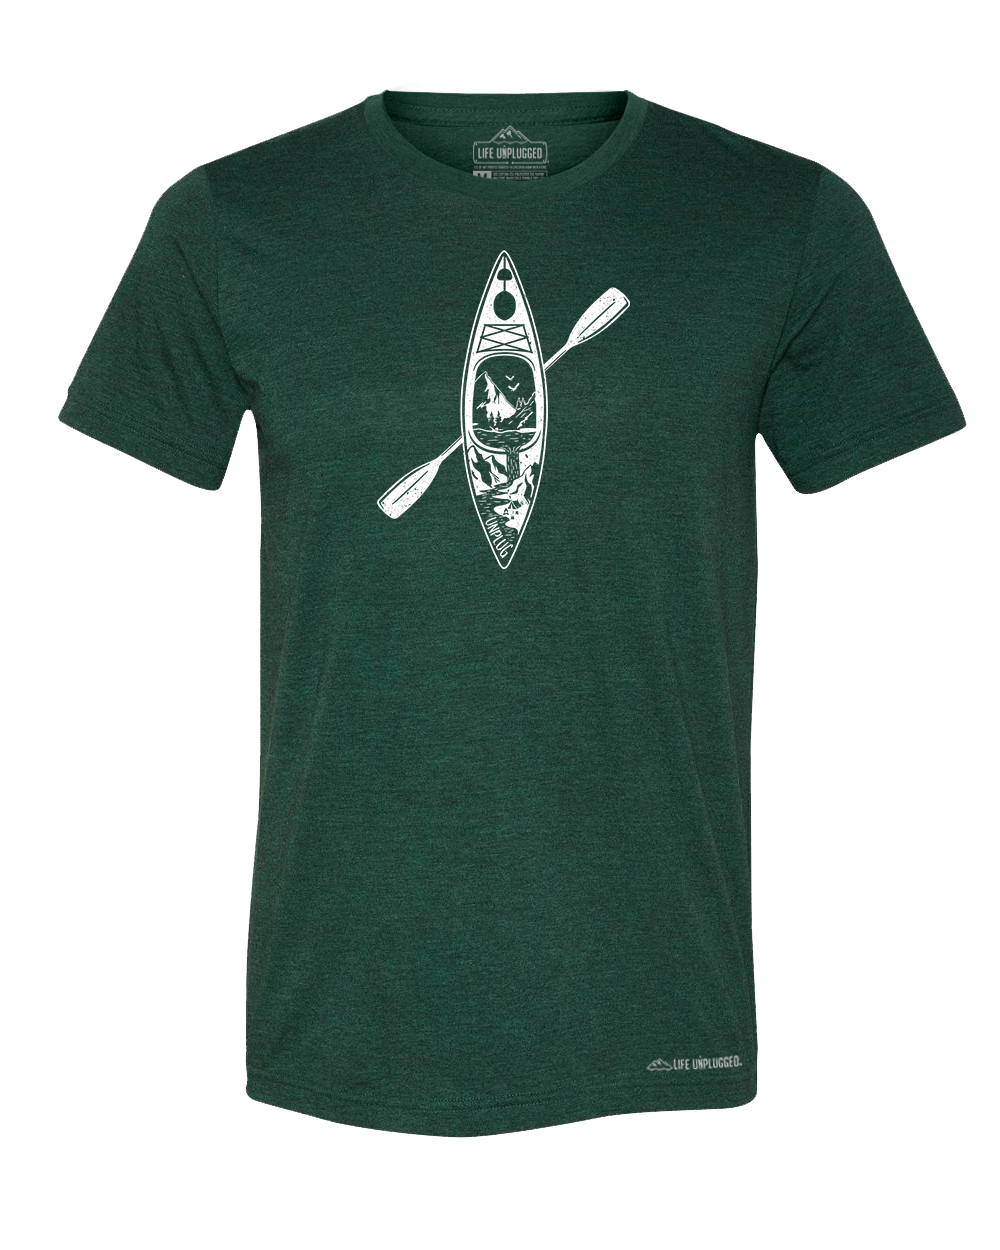 Kayak Mountain Scene Premium Triblend T-Shirt